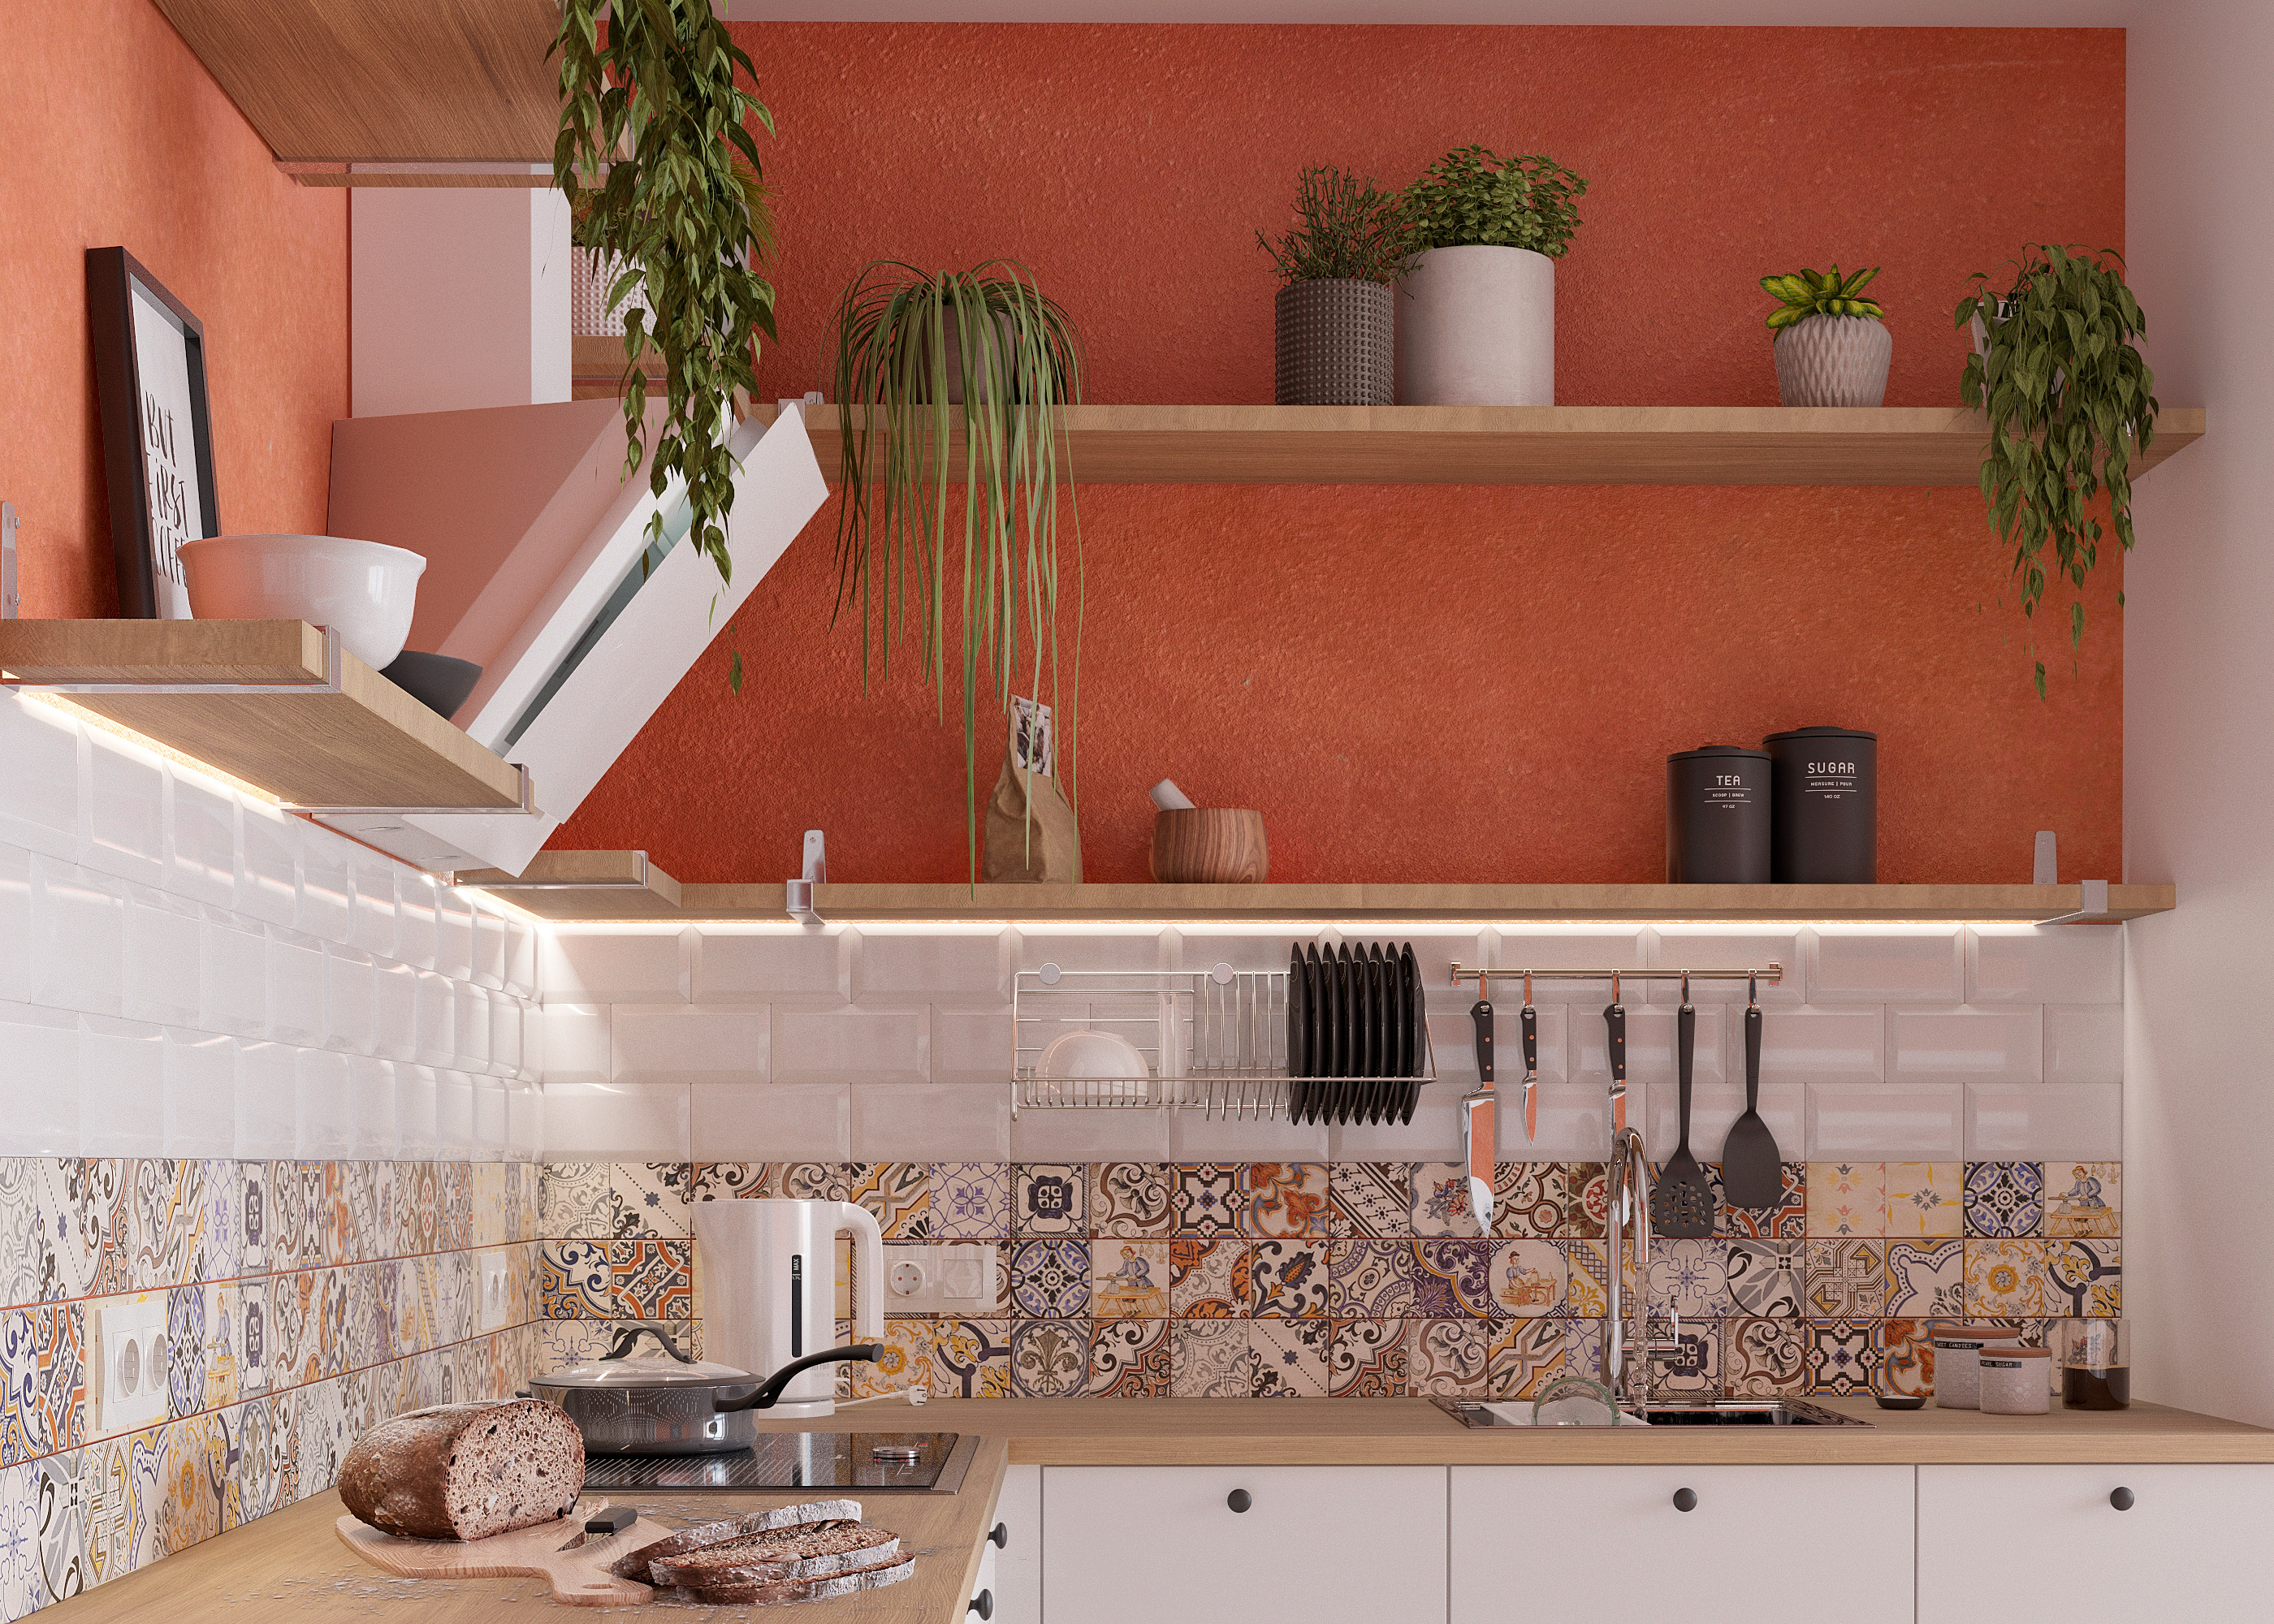 IconP - Thiết kế chung cư căn hộ phong cách Scandinavian, phong cách Bắc Âu Ấn tượng, gam màu đỏ gạch nổi bật